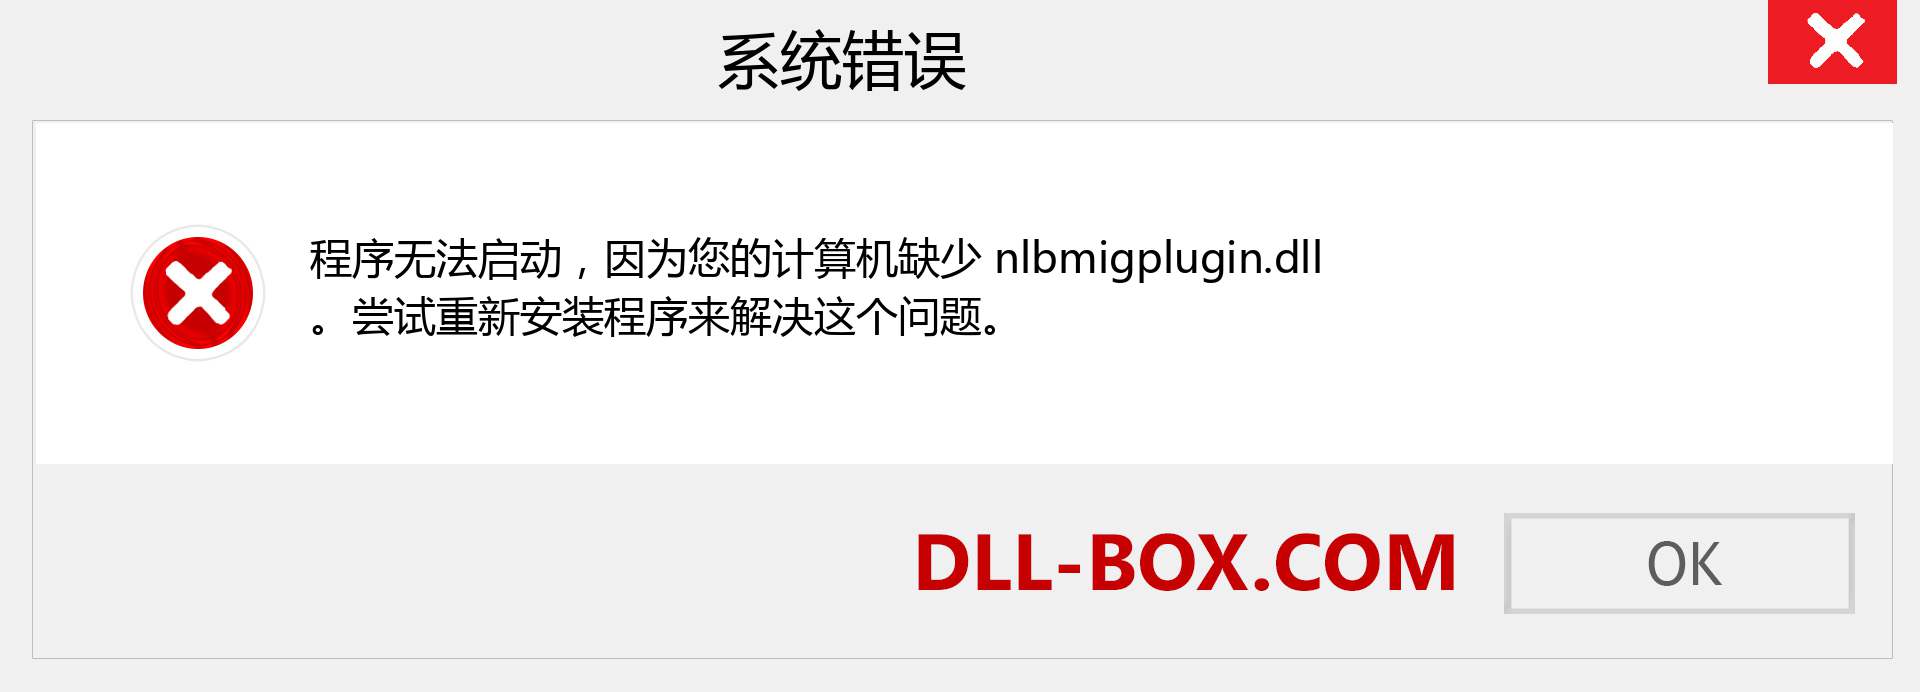 nlbmigplugin.dll 文件丢失？。 适用于 Windows 7、8、10 的下载 - 修复 Windows、照片、图像上的 nlbmigplugin dll 丢失错误